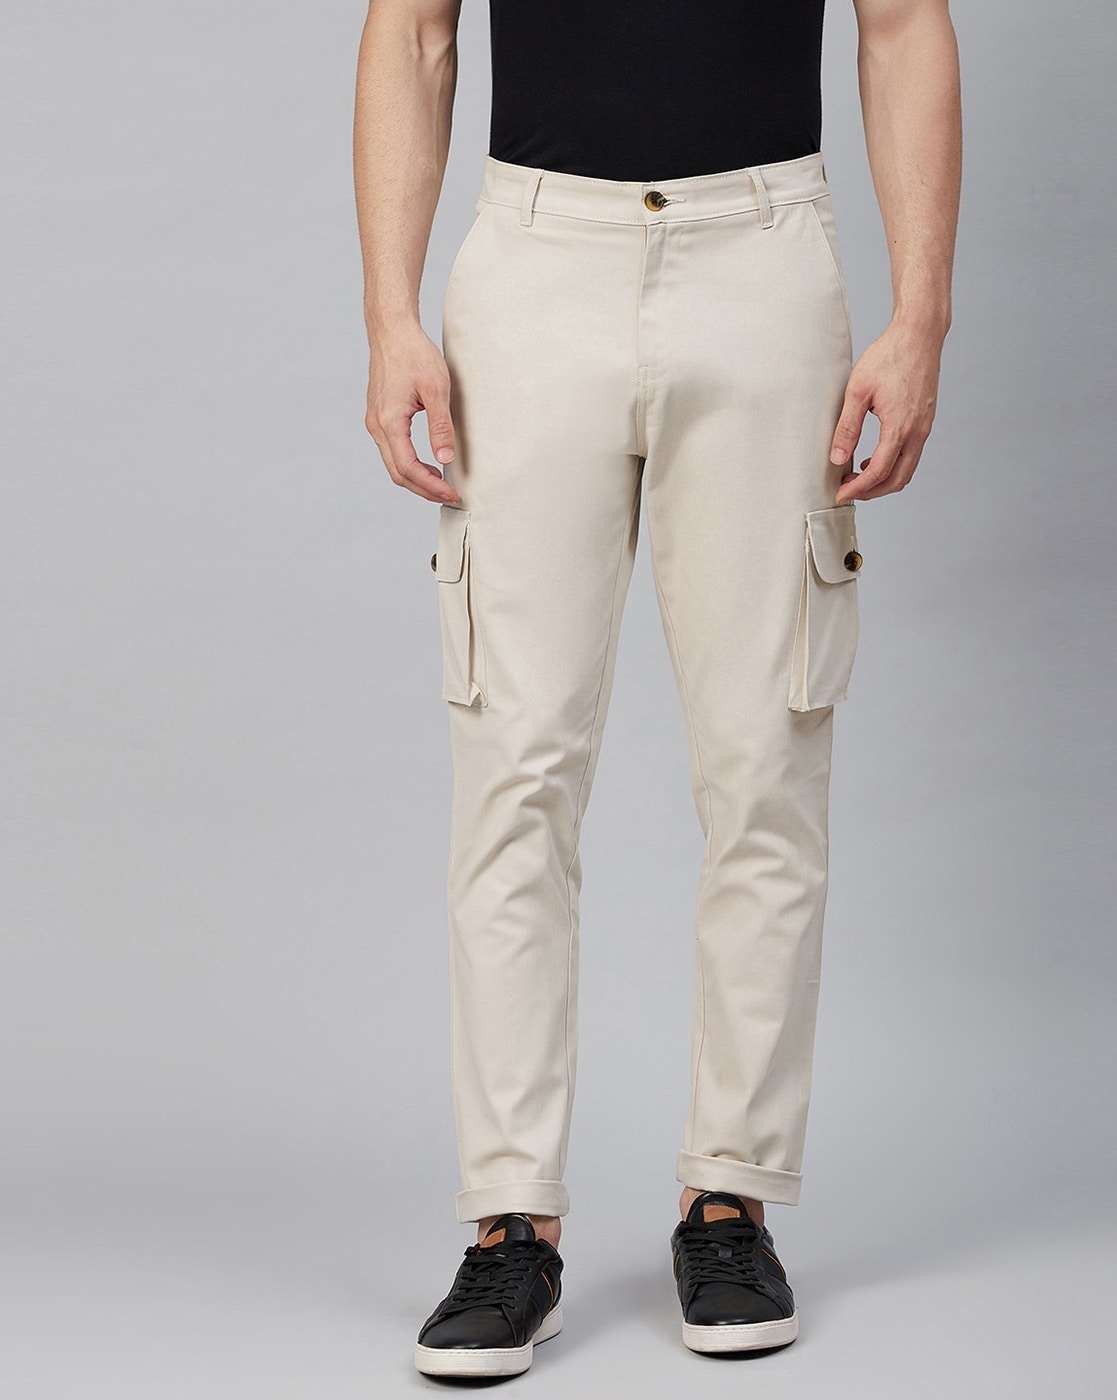 Buy Black Trousers  Pants for Men by Hubberholme Online  Ajiocom